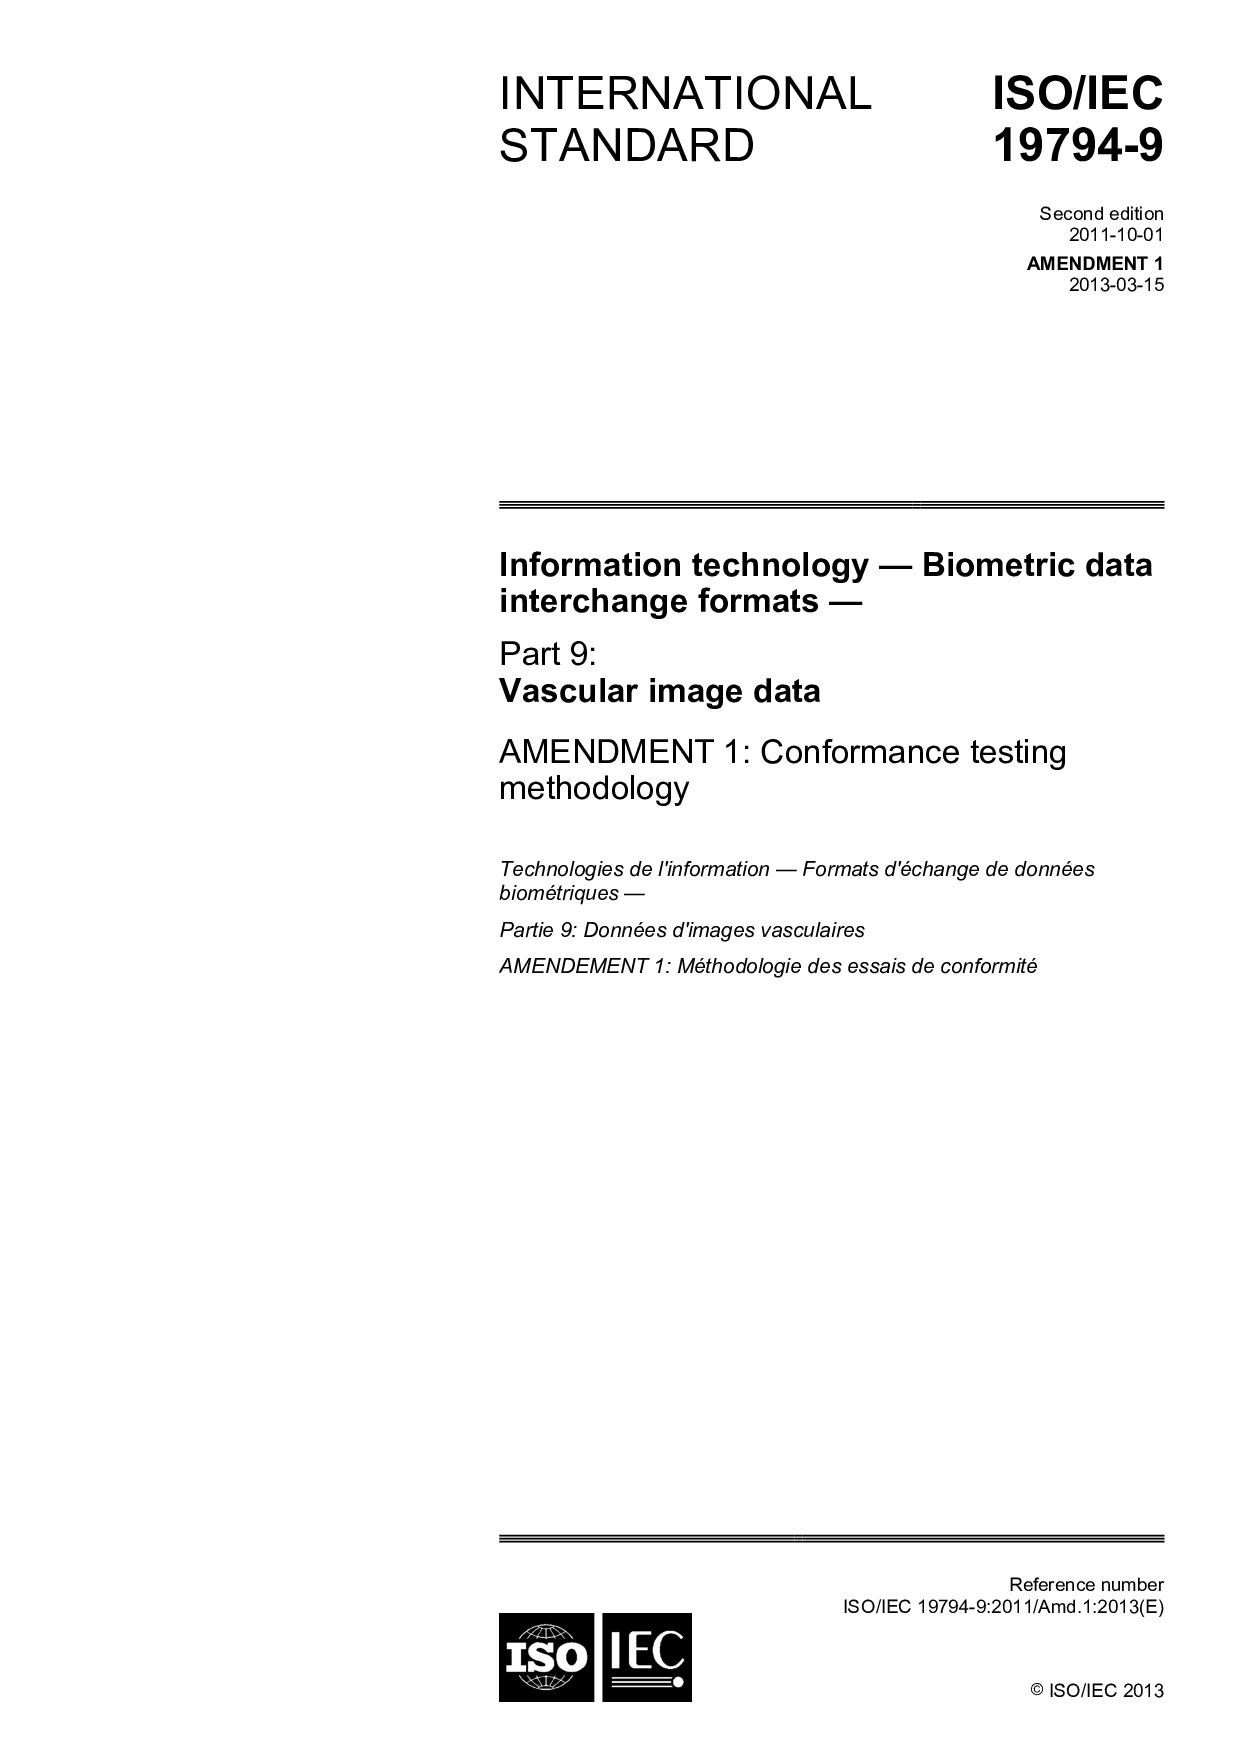 ISO/IEC 19794-9:2011/Amd 1:2013封面图